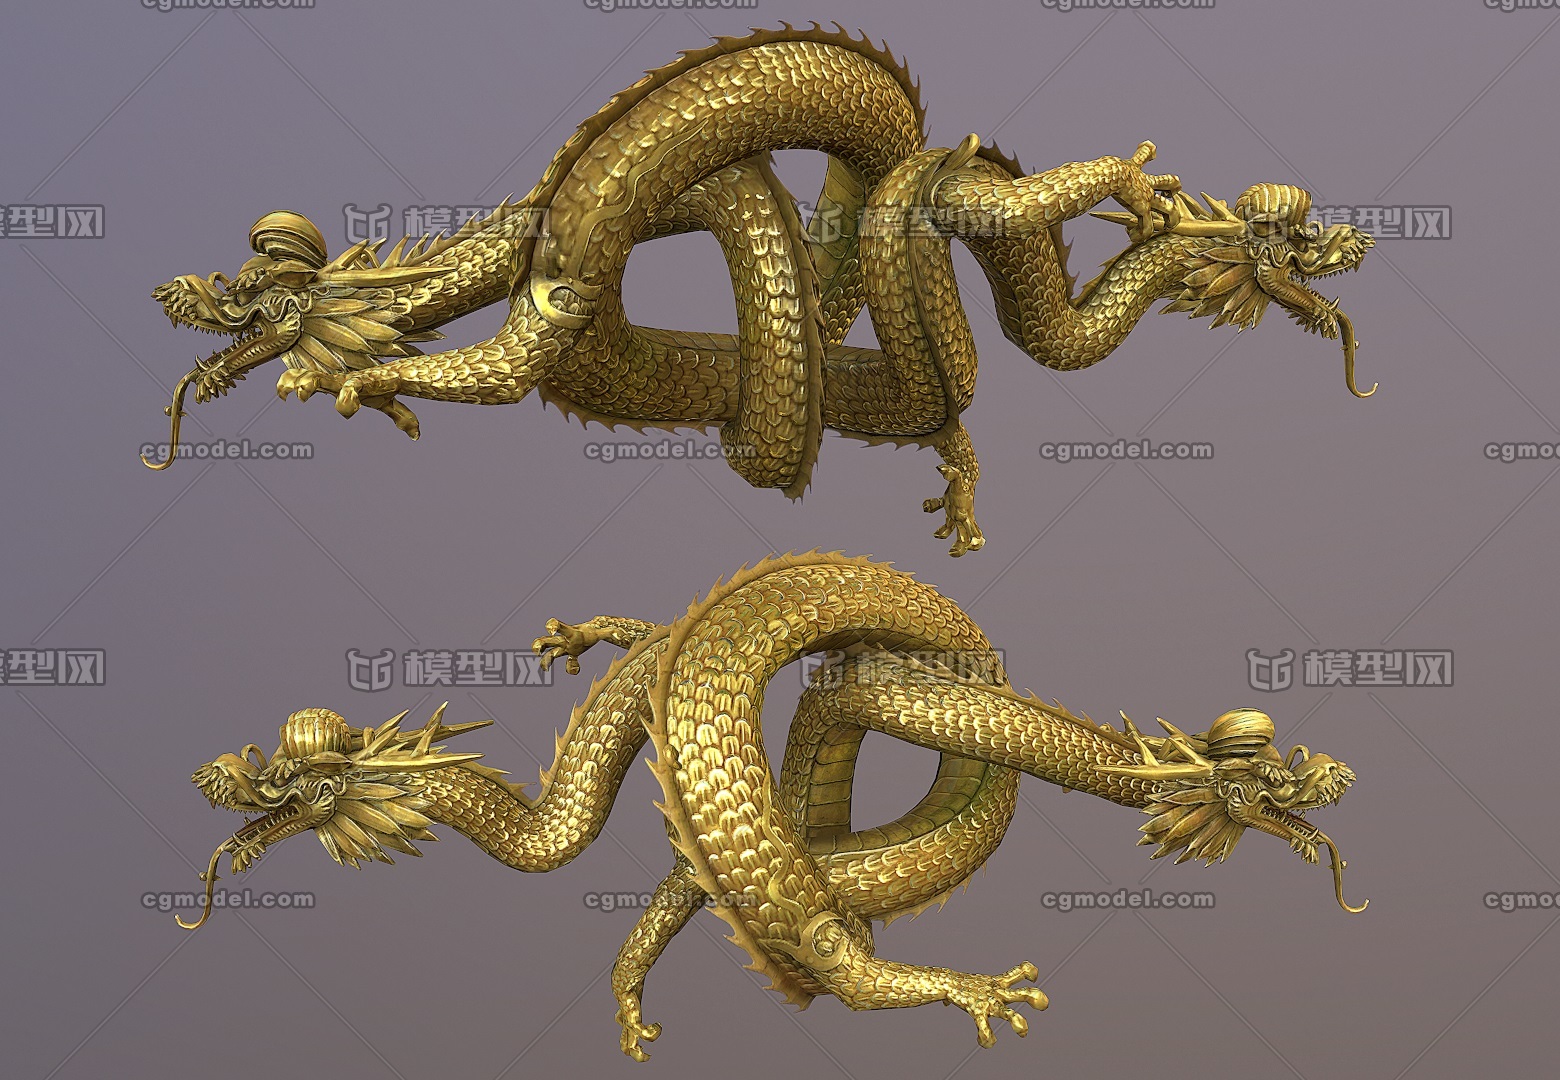 高质量 缠金龙雕塑    二龙缠身    次世代   中国龙     简模雕塑